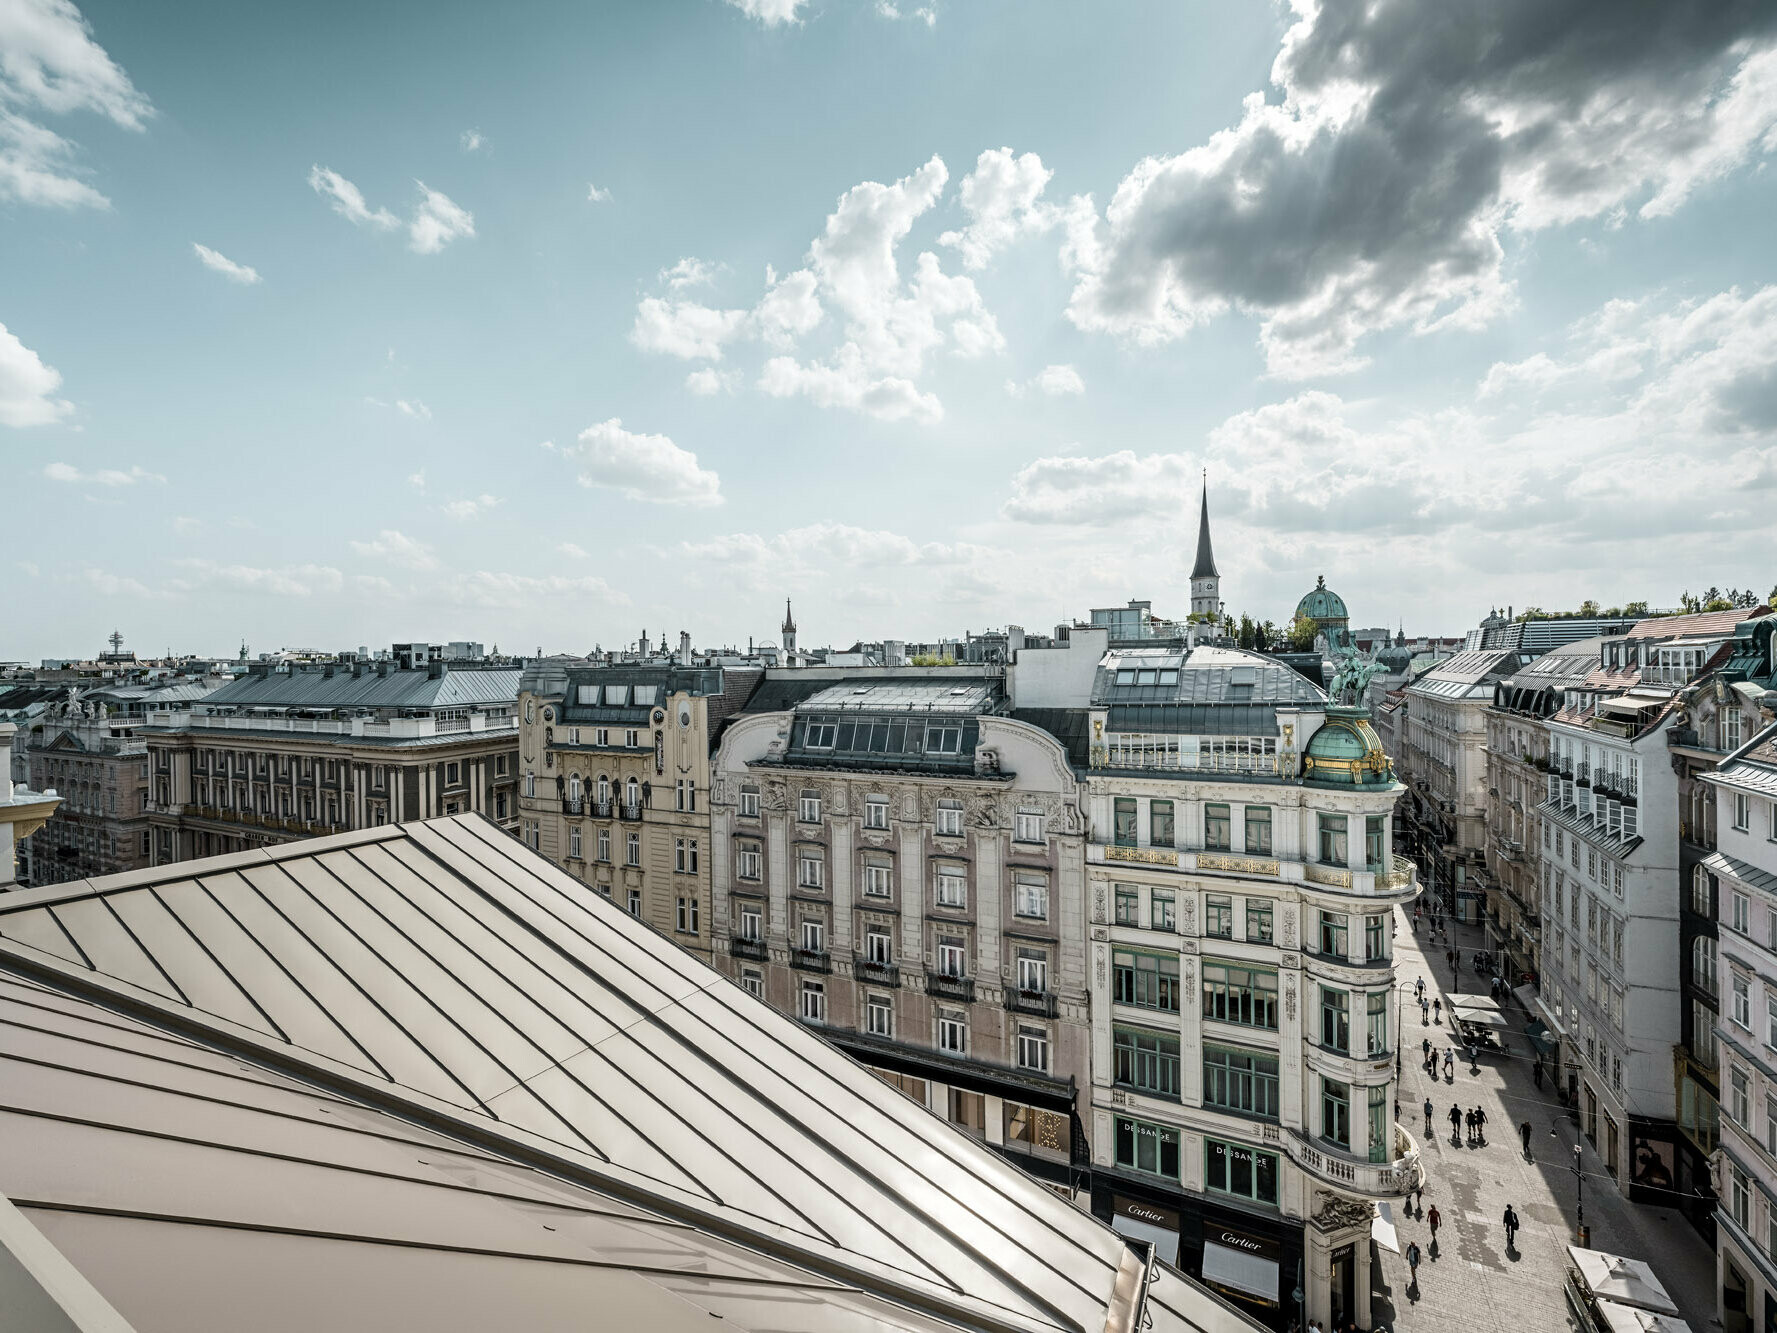 Weiter Blick auf die Dächer von Wien, links im Bild die Prefalz-Bahnen auf dem Rosewood Hotel Vienna im noblen Bronzeton.